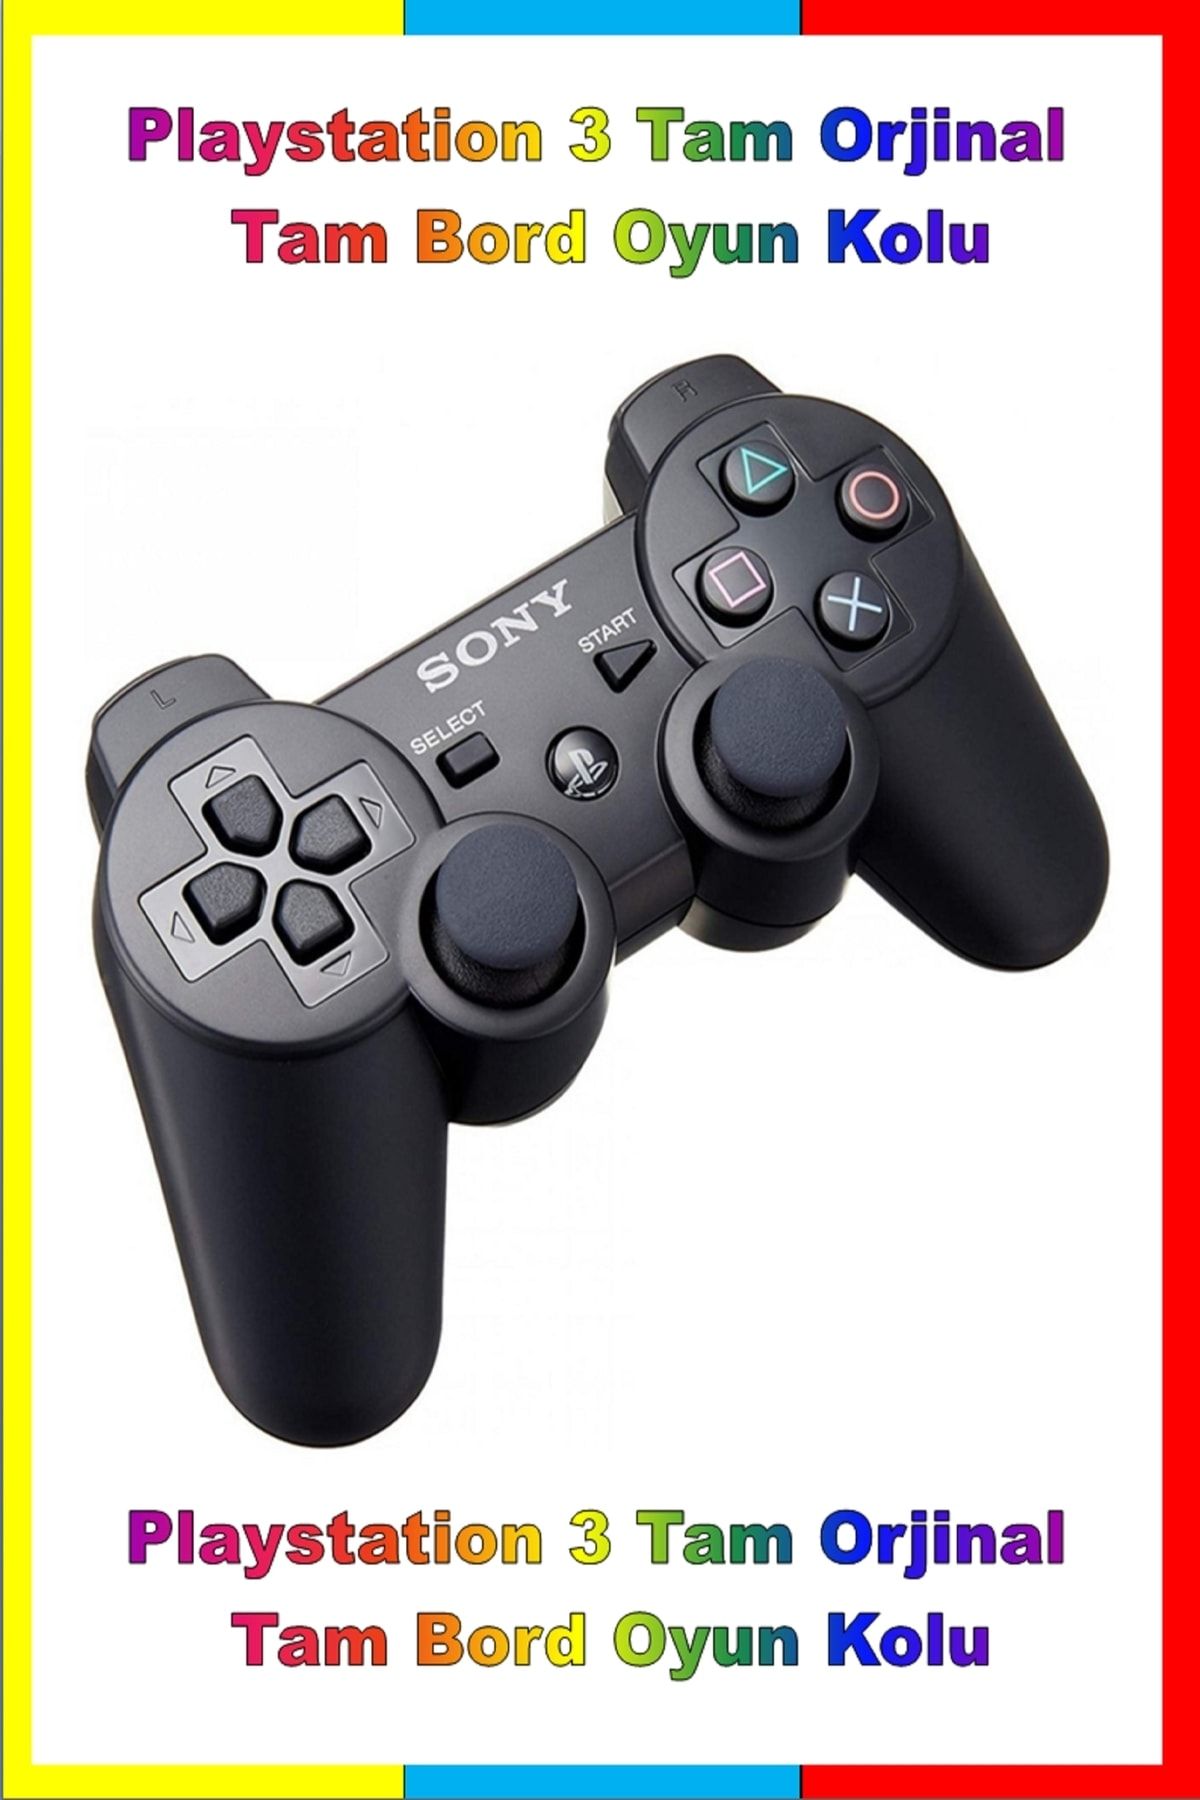 Sony Playstation 3 Tam Orjinal Tam Bord Oyun Kolu Ps3 Dualshock 3 Teşhir - Ikinci El Üründür